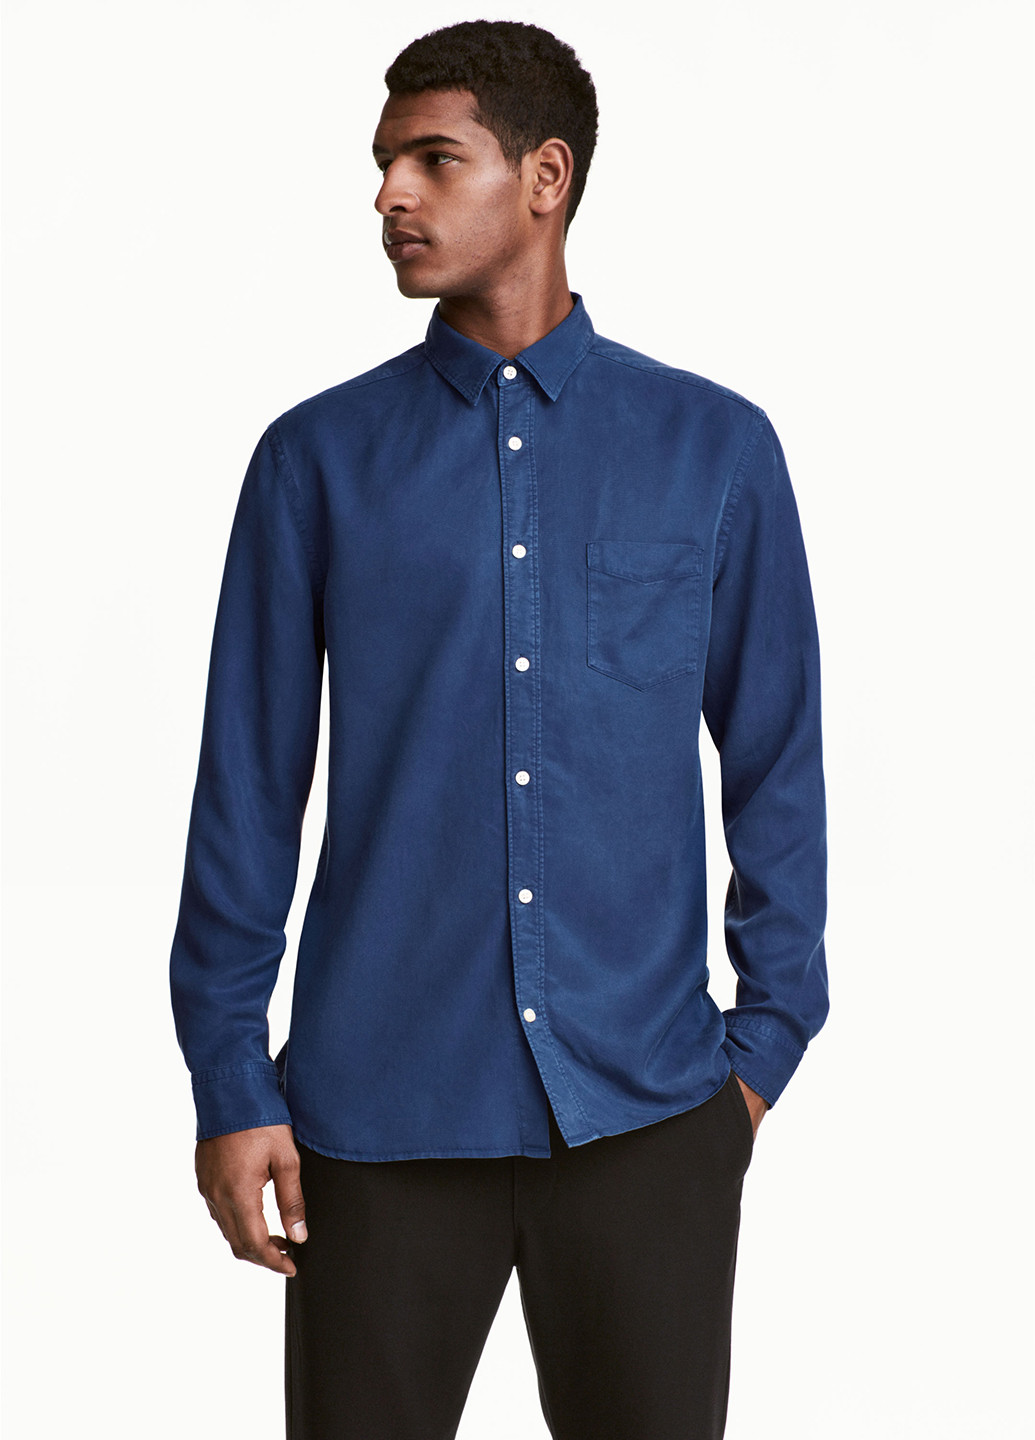 Синяя джинсовая рубашка однотонная H&M с длинным рукавом